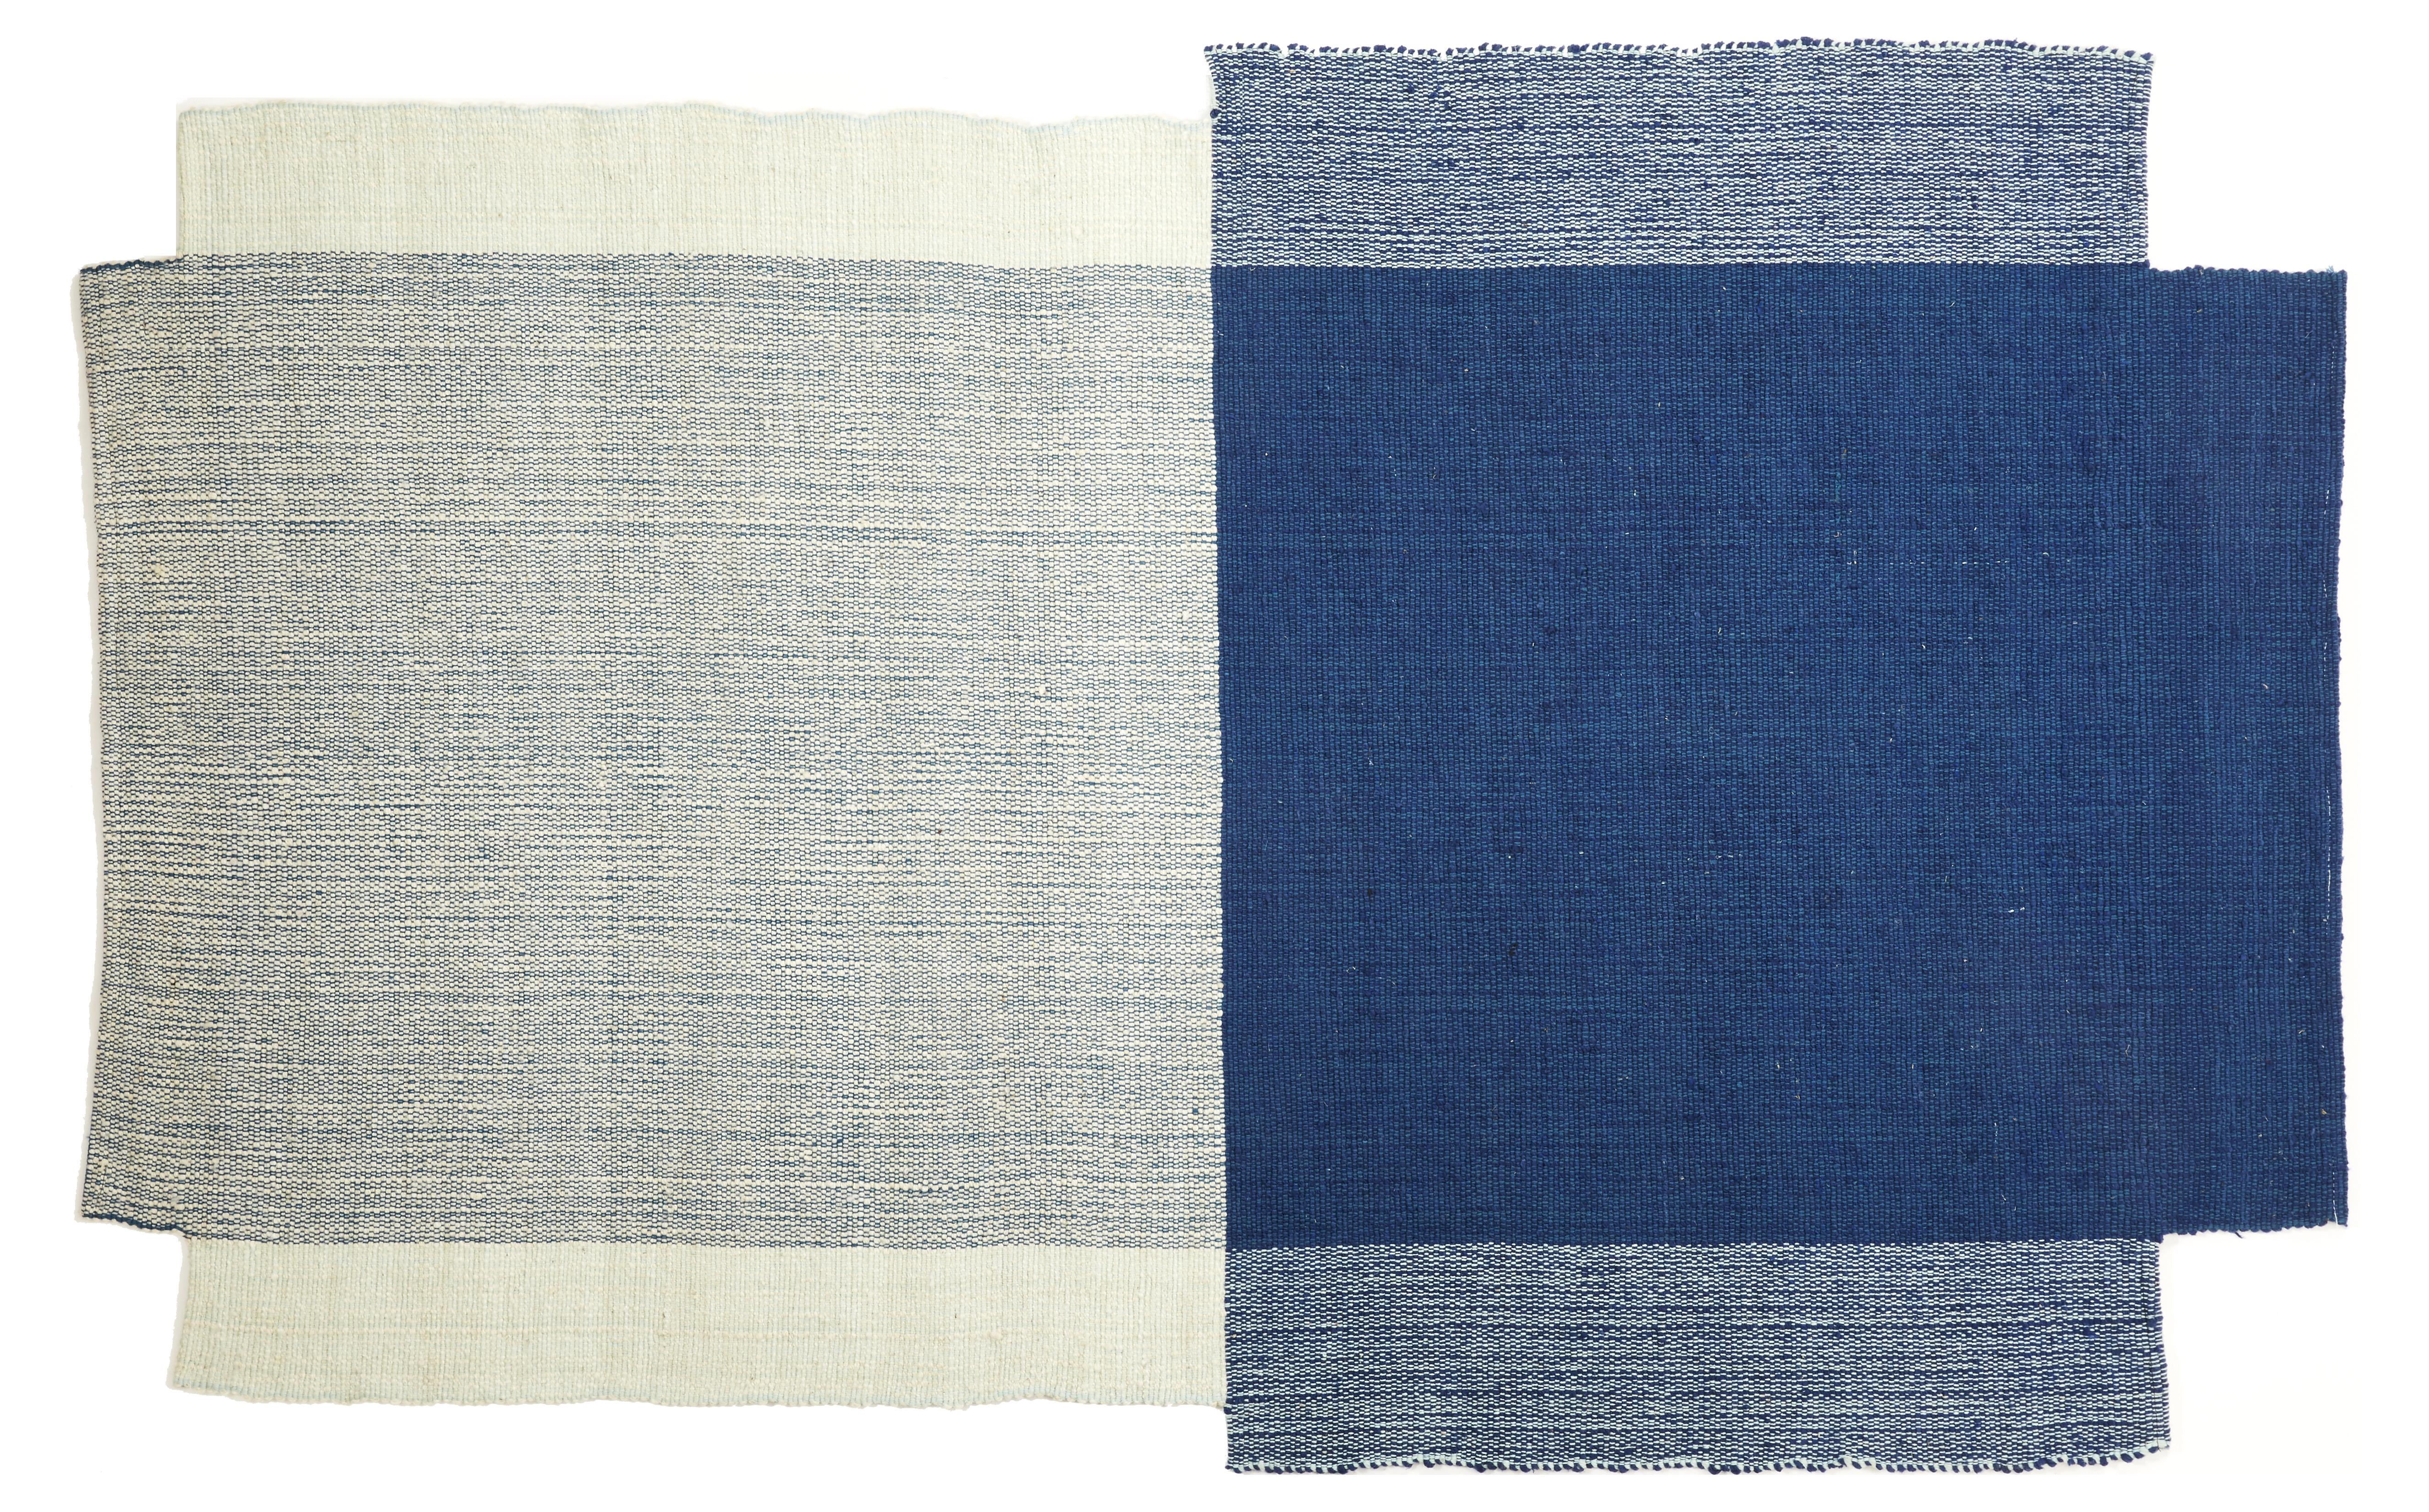 Petit tapis Nobsa de Sebastian Herkner
MATERIAL : 100% laine vierge naturelle. 
Technique : tissé à la main en Colombie.
Dimensions : L 214 x L 130 cm 
Disponible en couleurs : gris/gris/crème, gris/ocre/crème, rouge/ocre/crème,